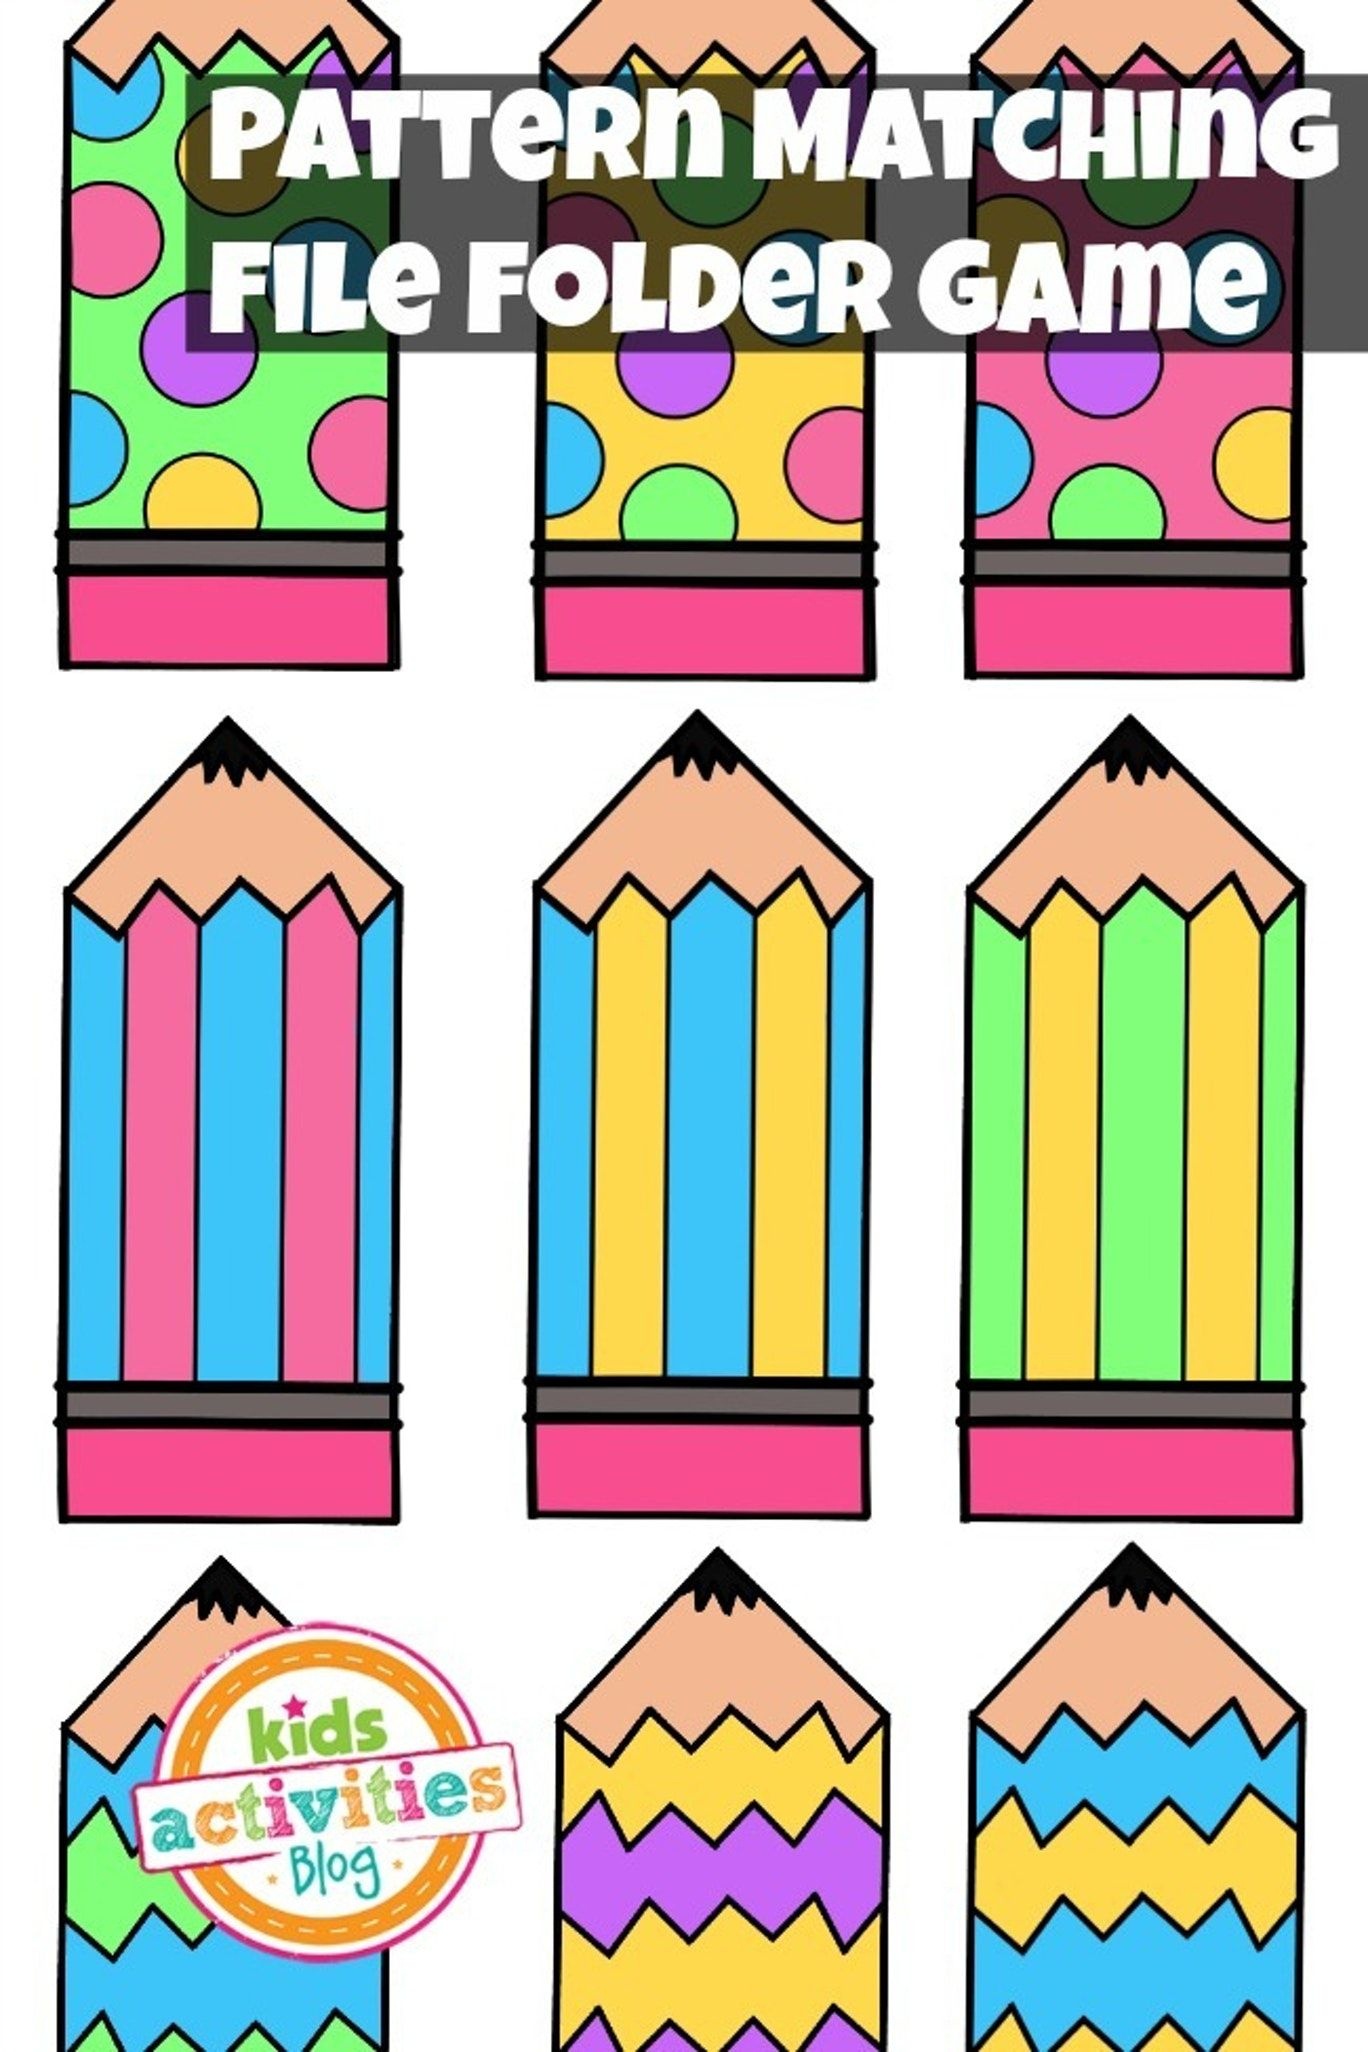 Pattern Matching Free Printable File Folder Game For Preschoolers - Free Printable File Folder Games